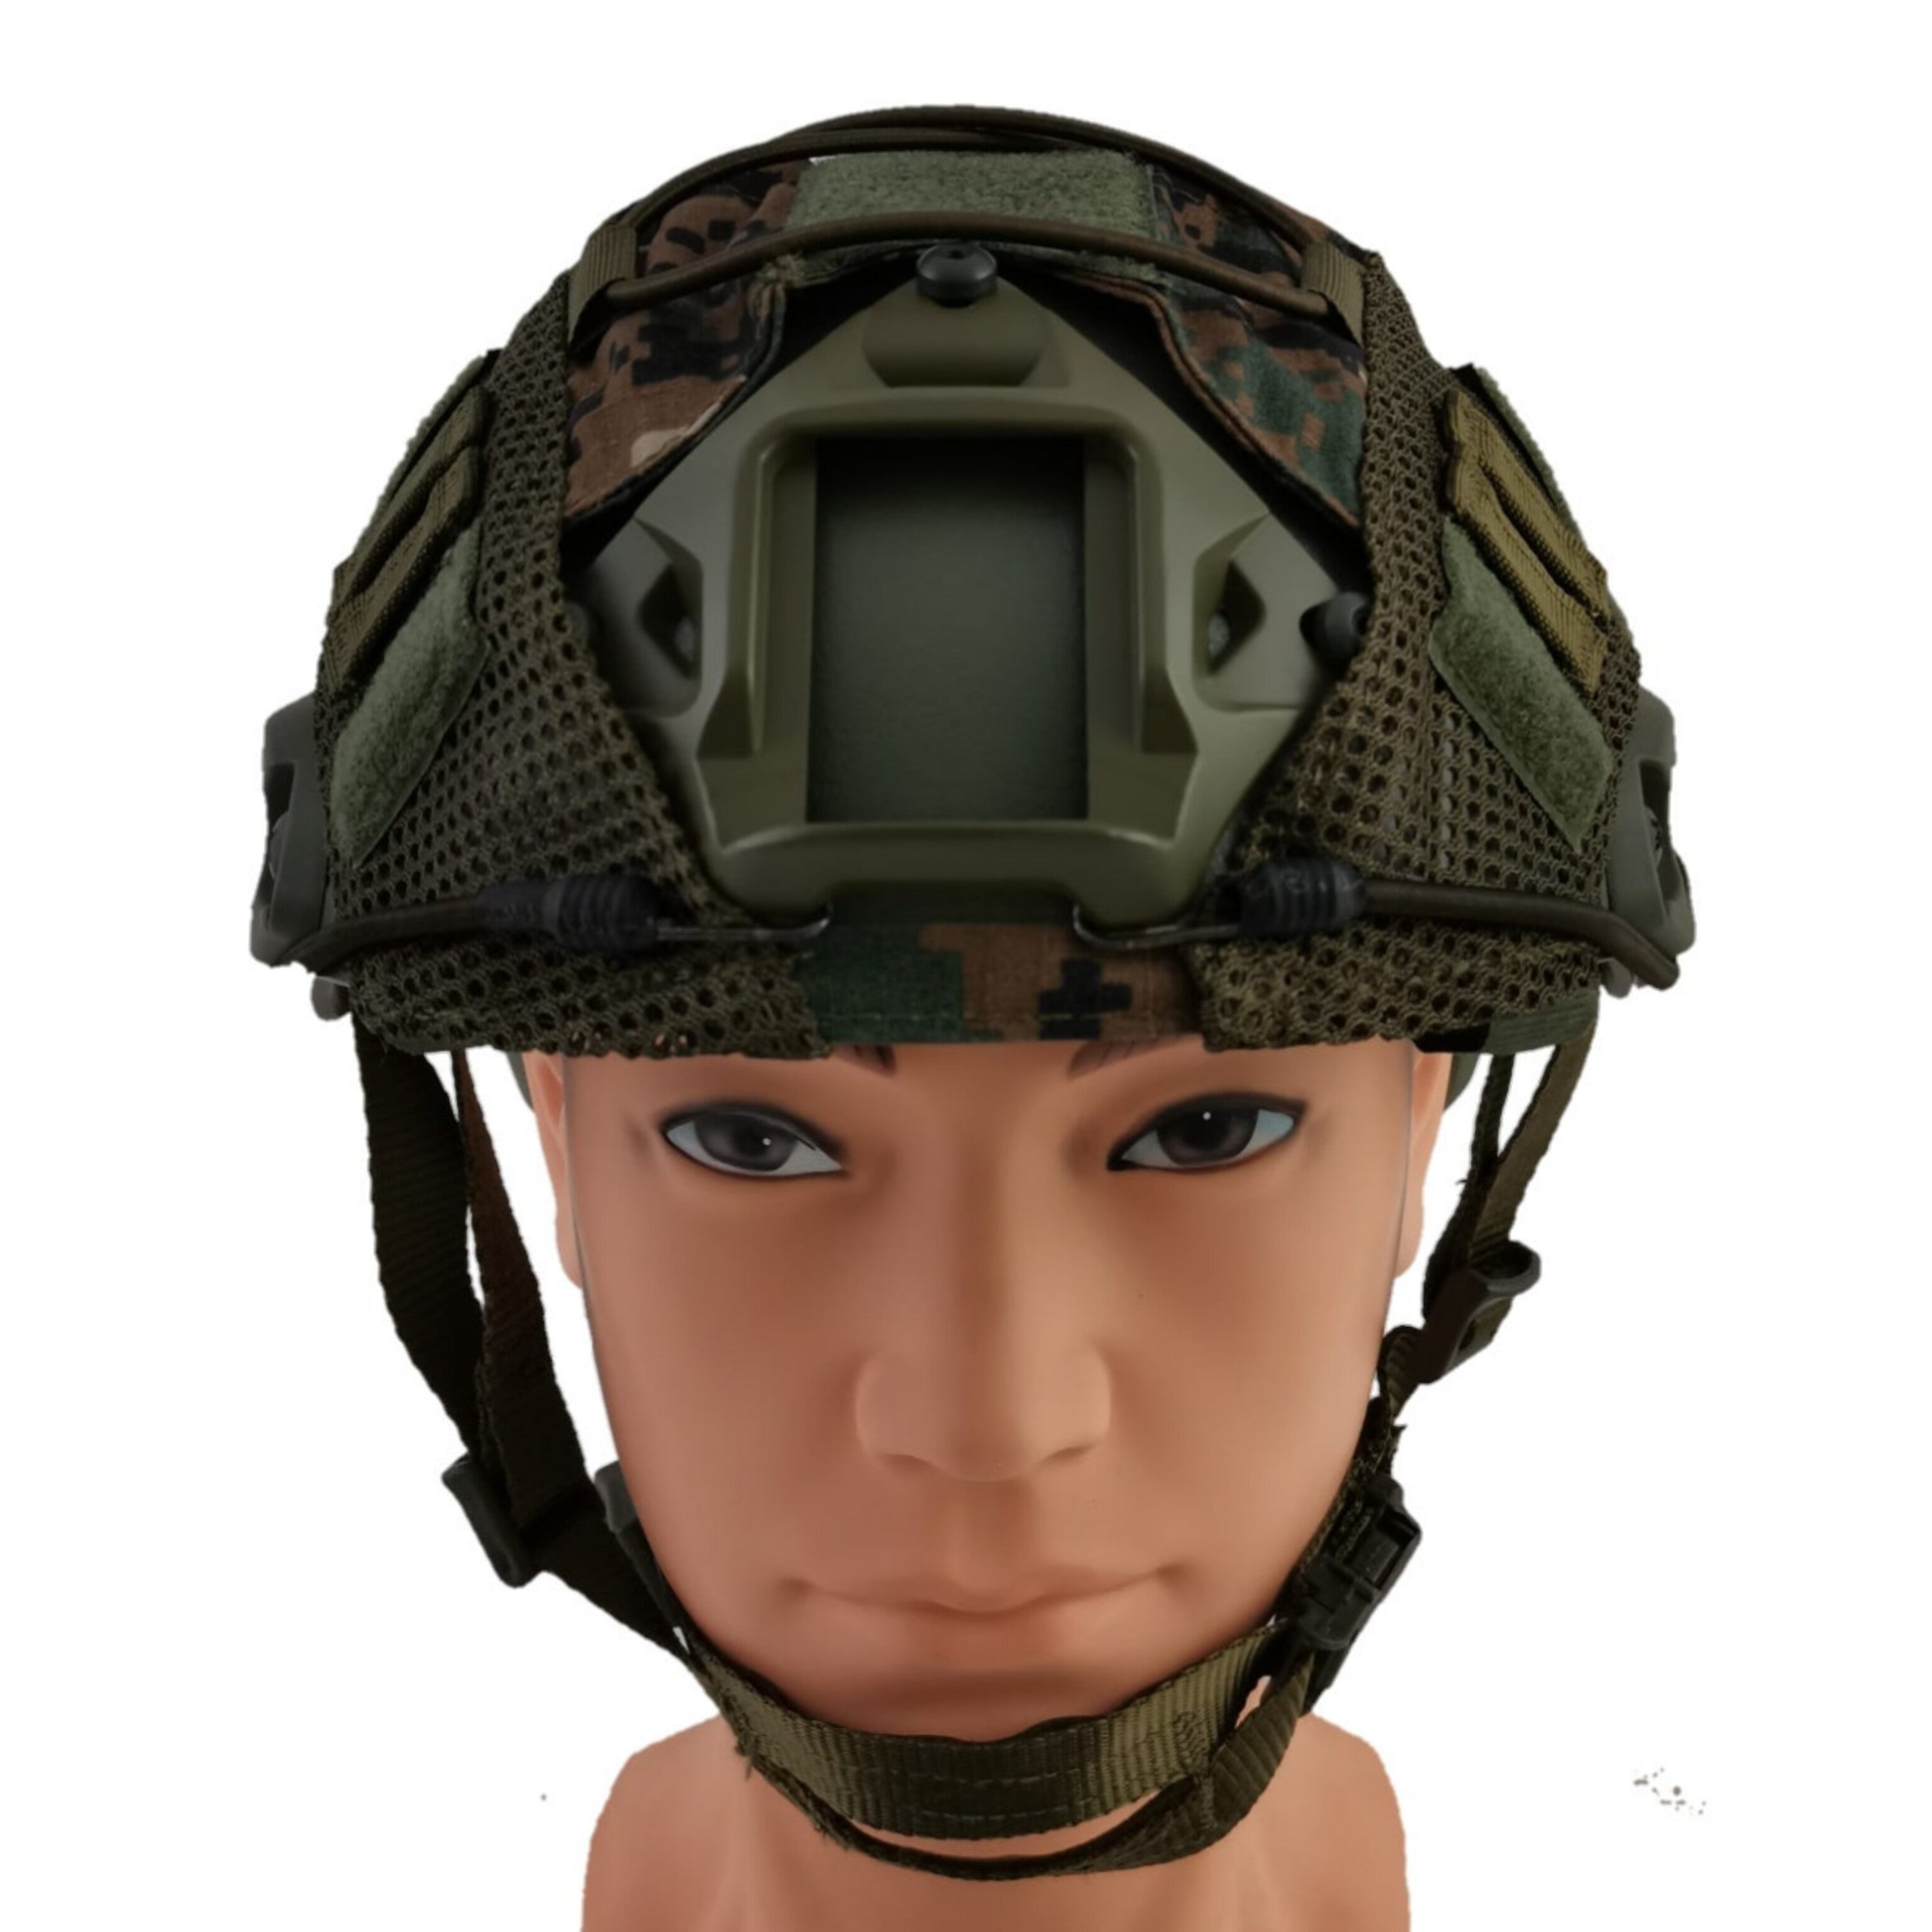 Helmet Cover - Marpat